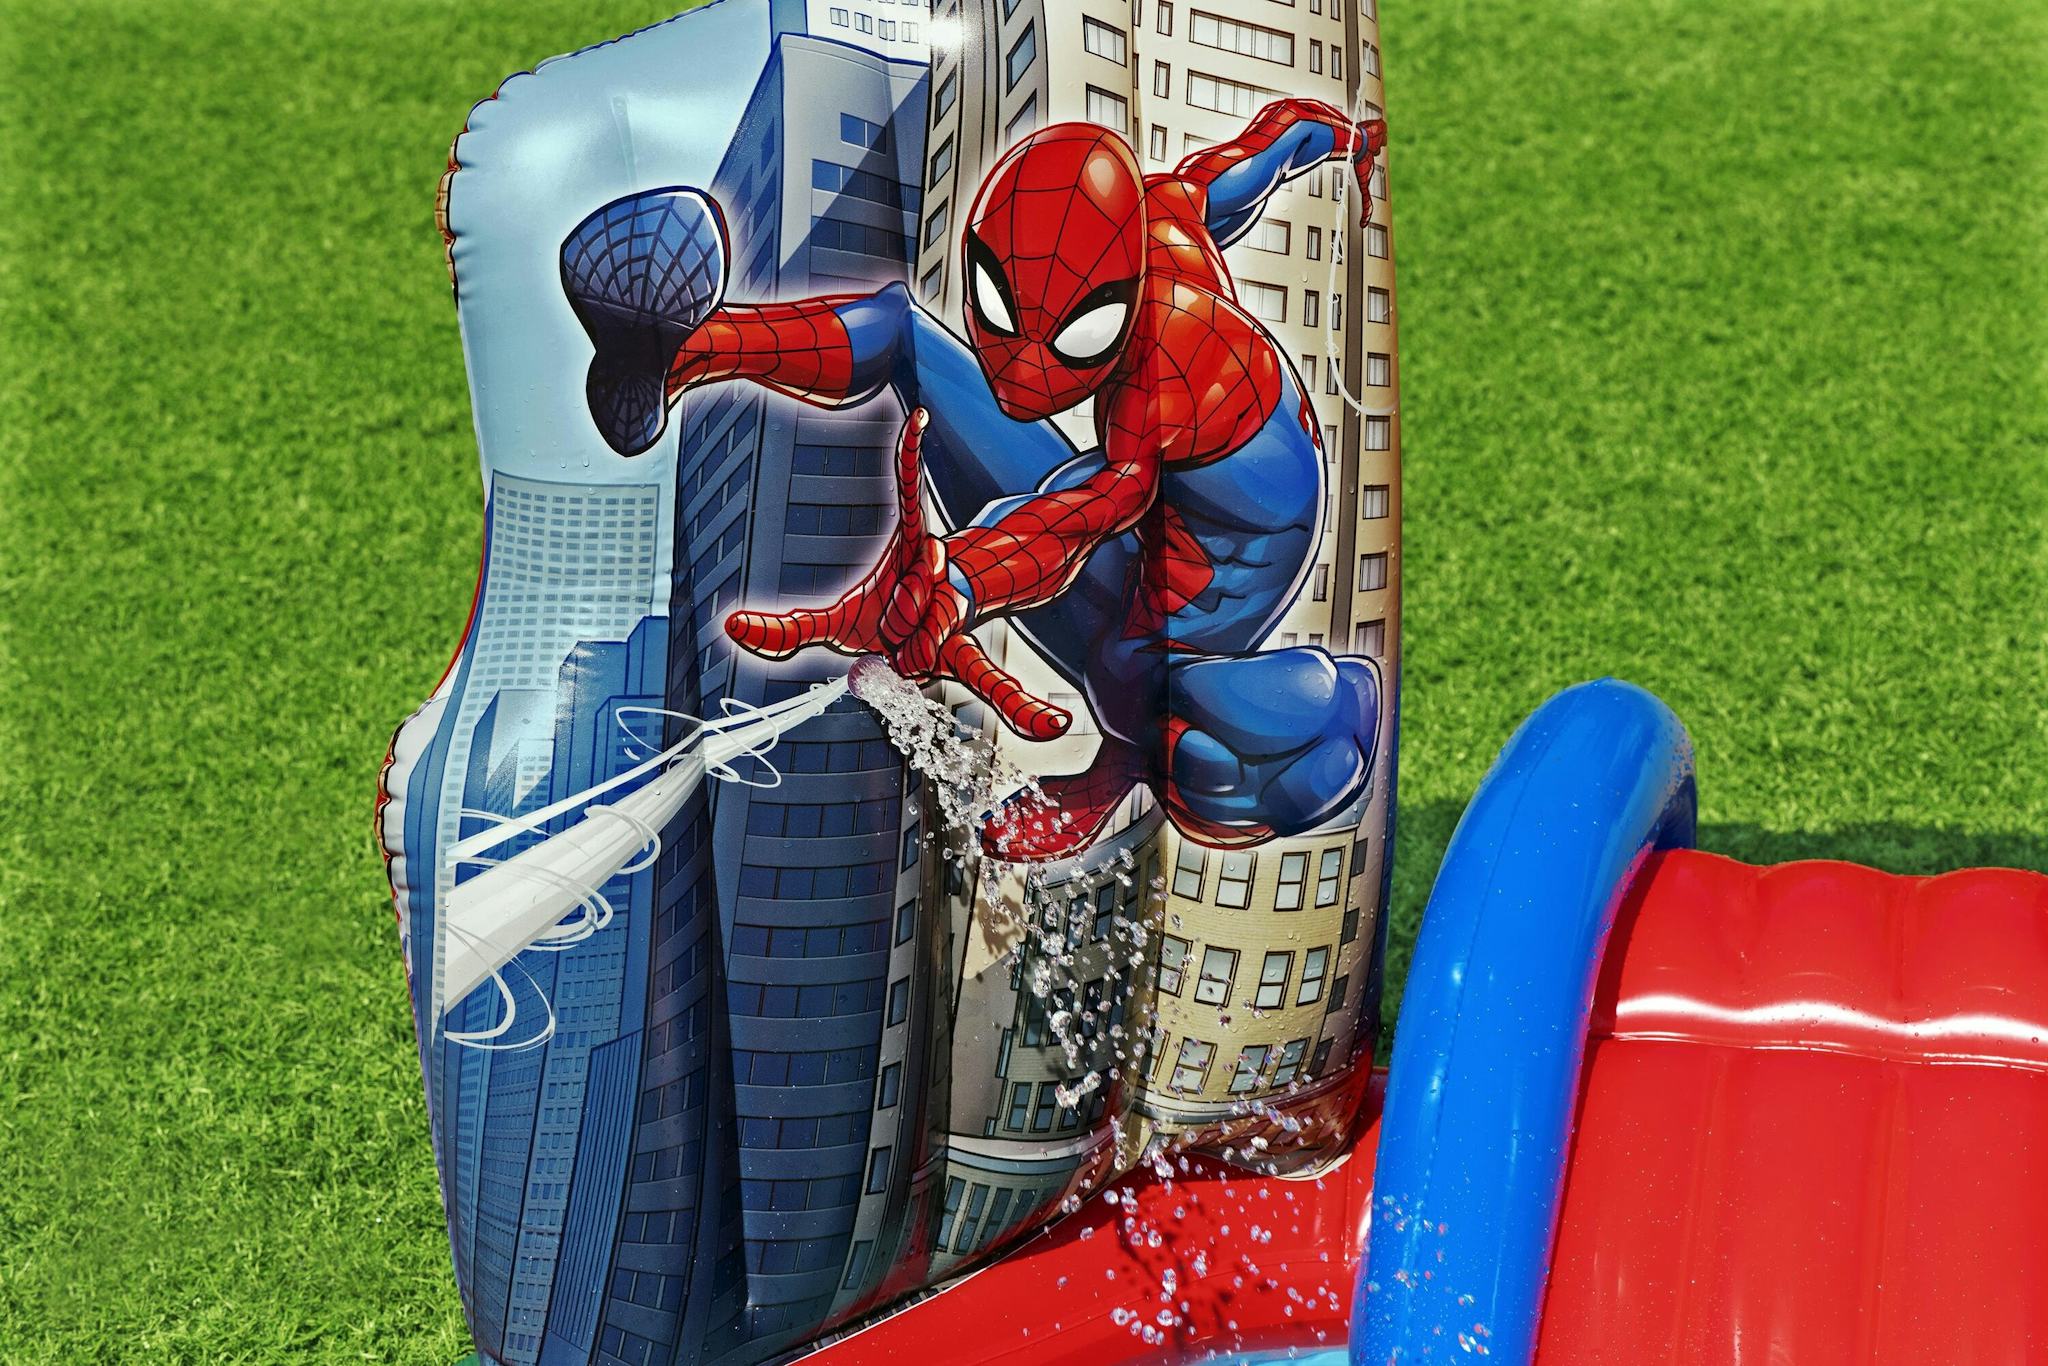 Giochi gonfiabili per bambini Playcenter gonfiabile Spider-Man Bestway 9